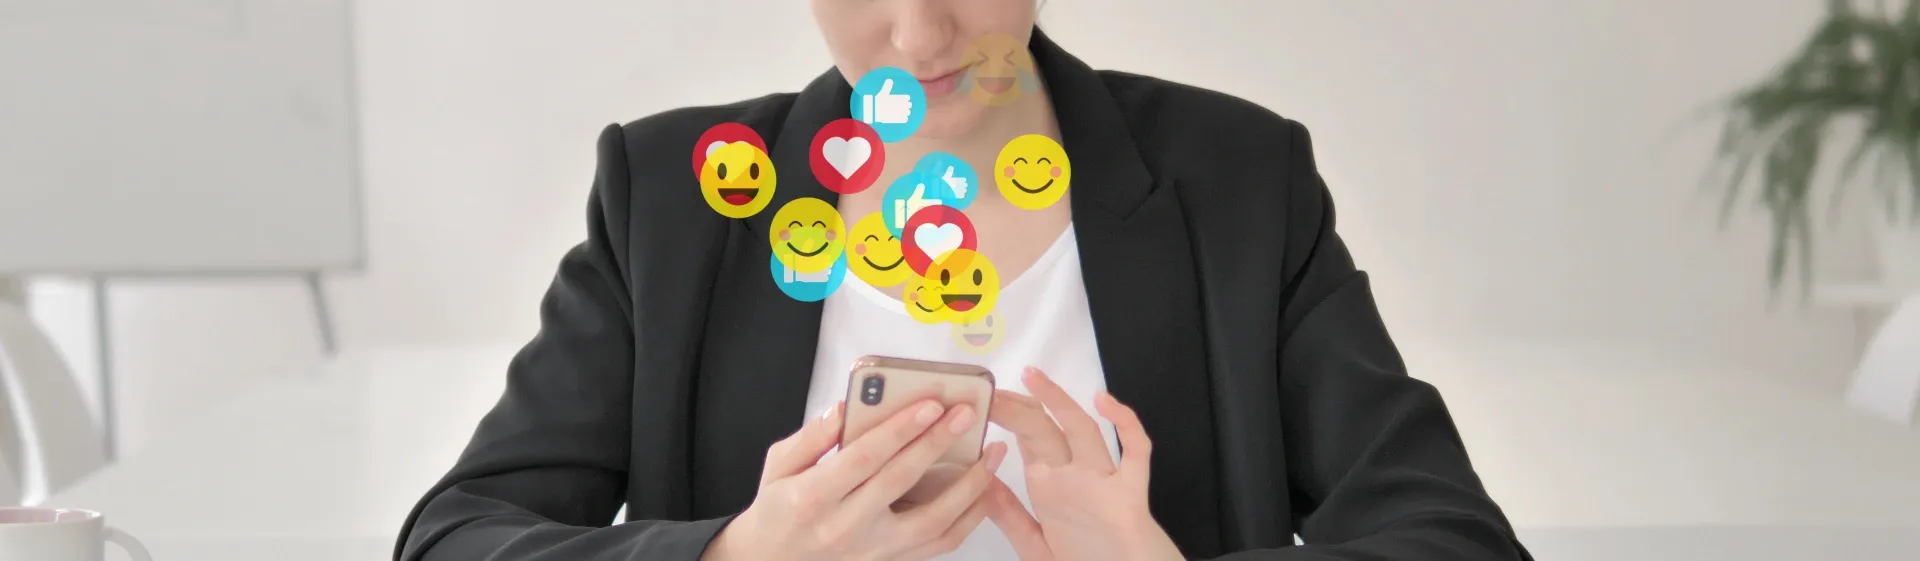 Emojis no iPhone: como instalar e criar seus próprios